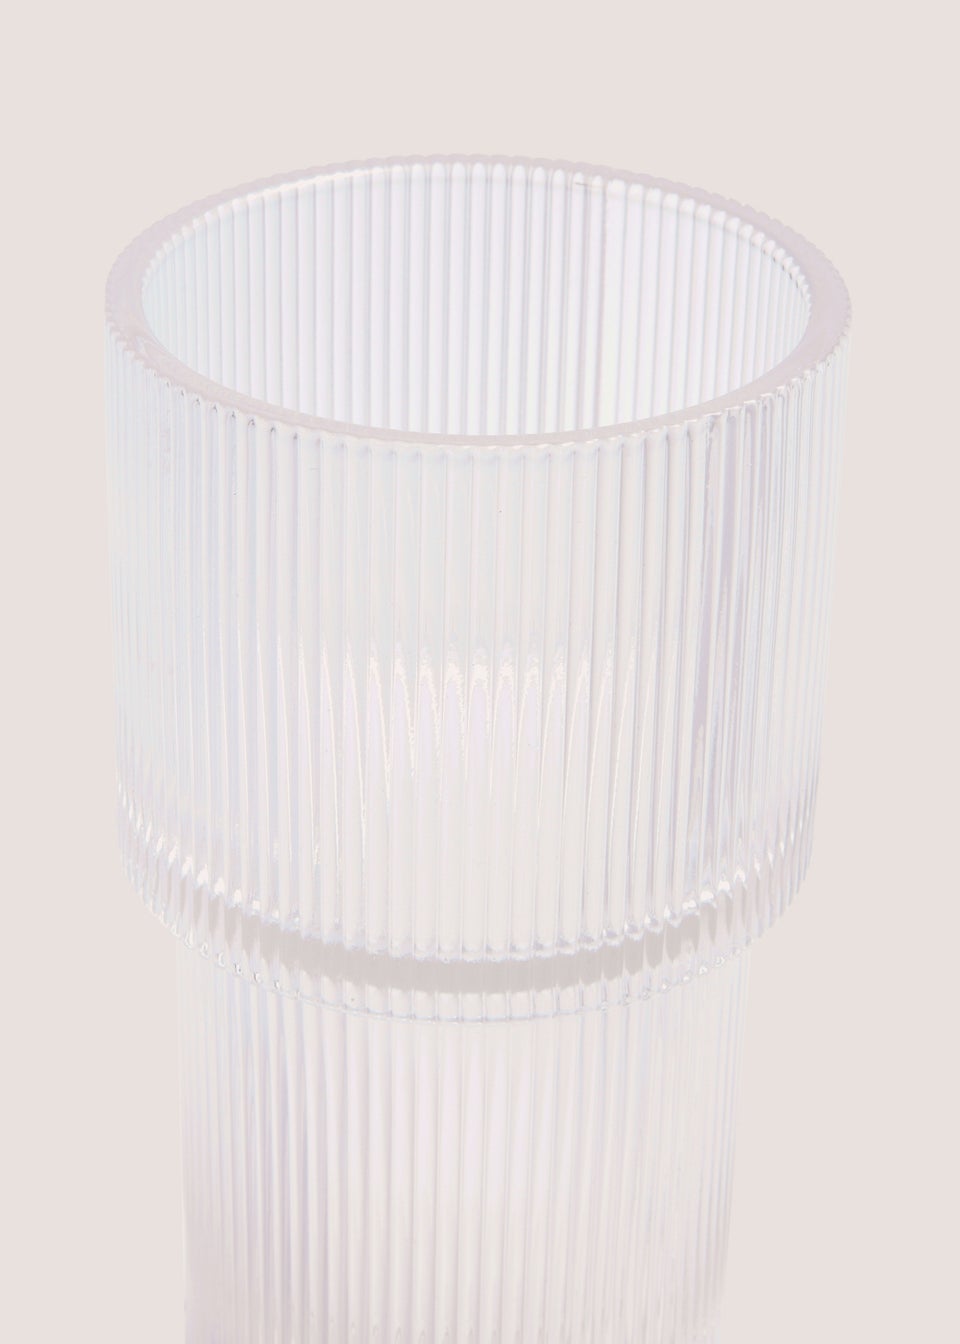 Ribbed Glass Vase (24cm x 11cm x 11cm)